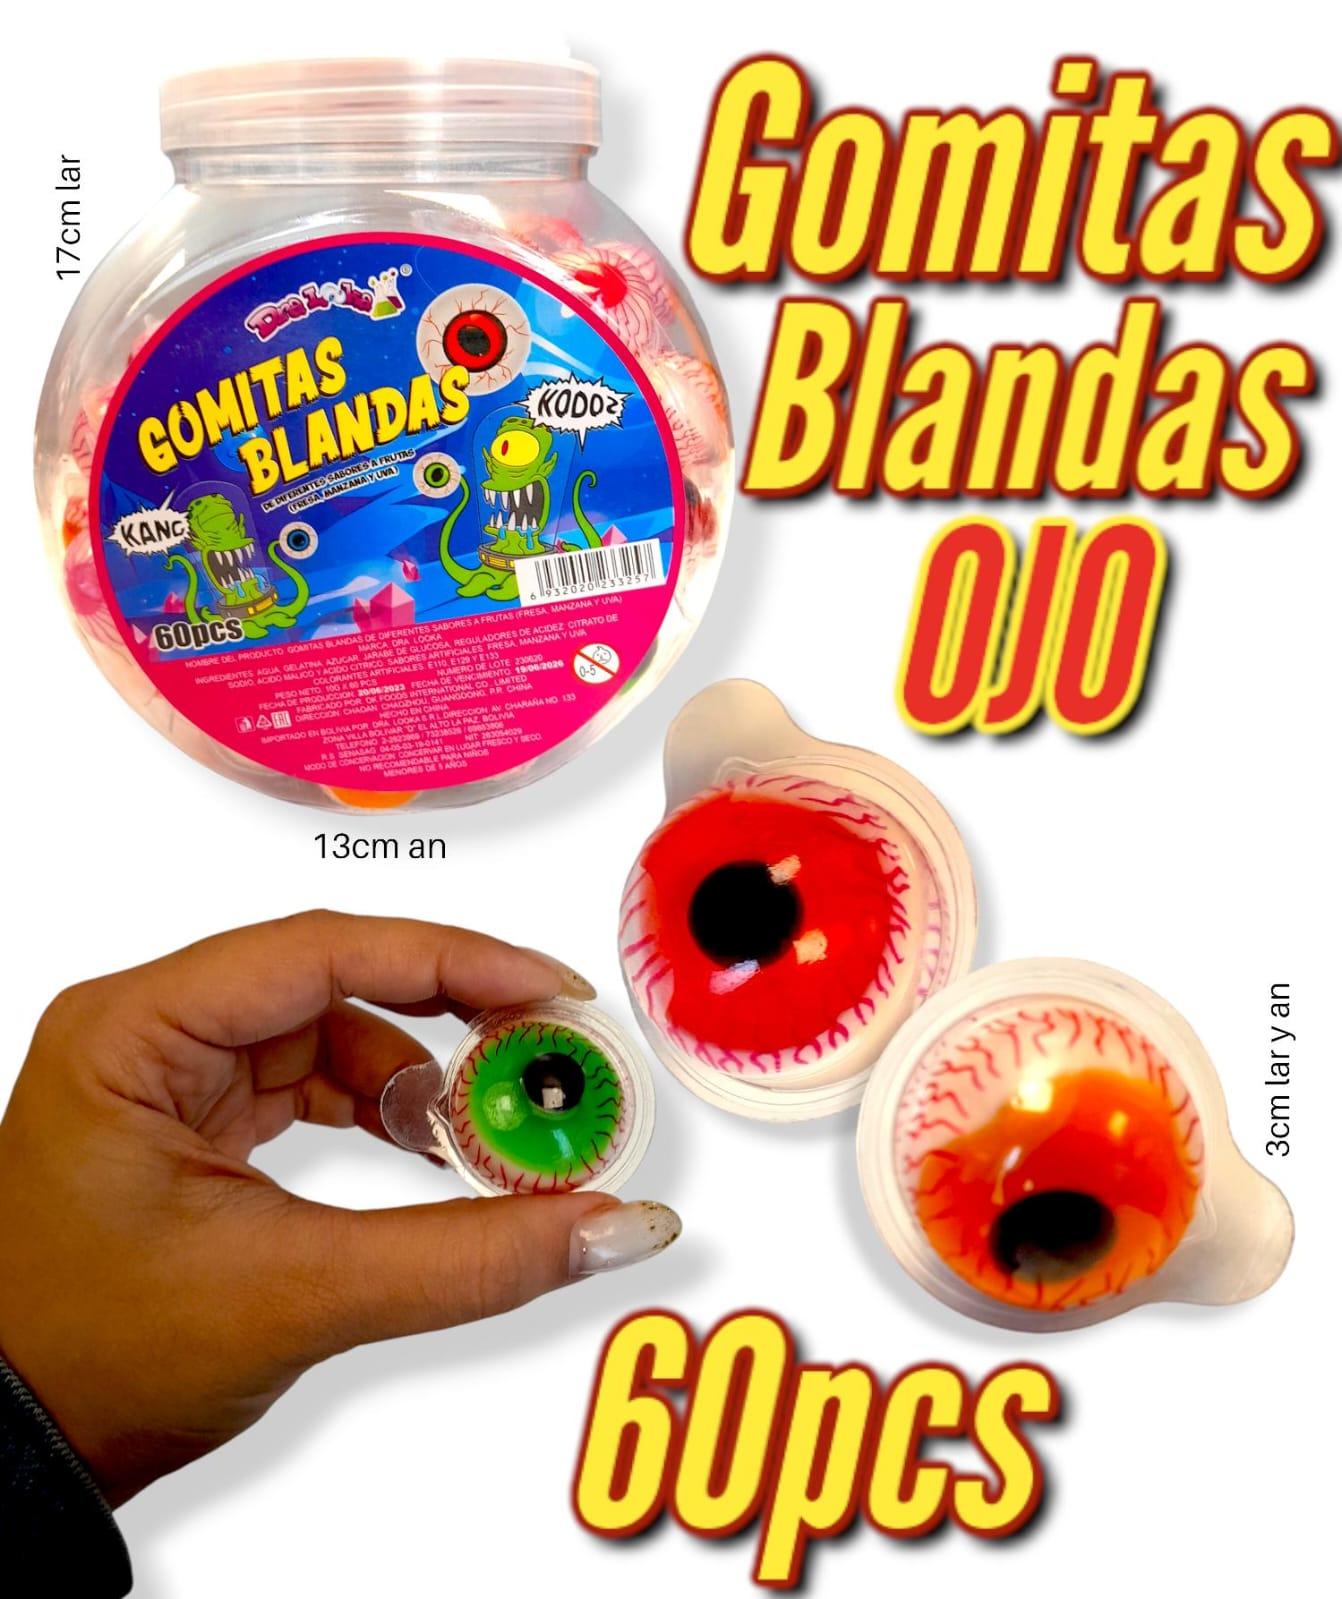 Gomitas Blandas OJO 